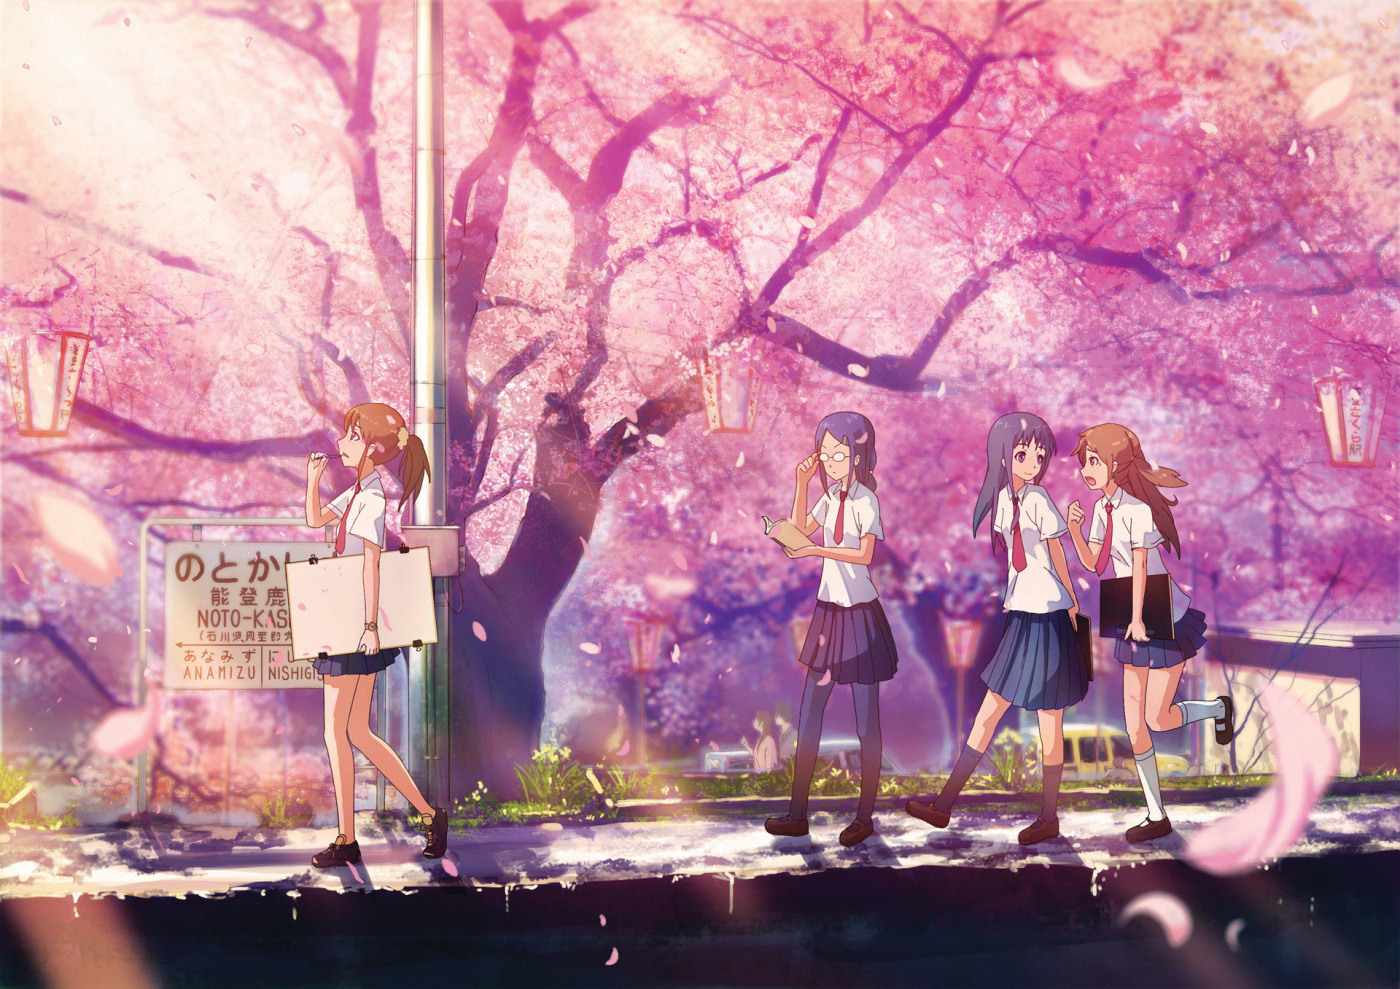 anime school wallpaper,rosado,púrpura,violeta,cielo,primavera